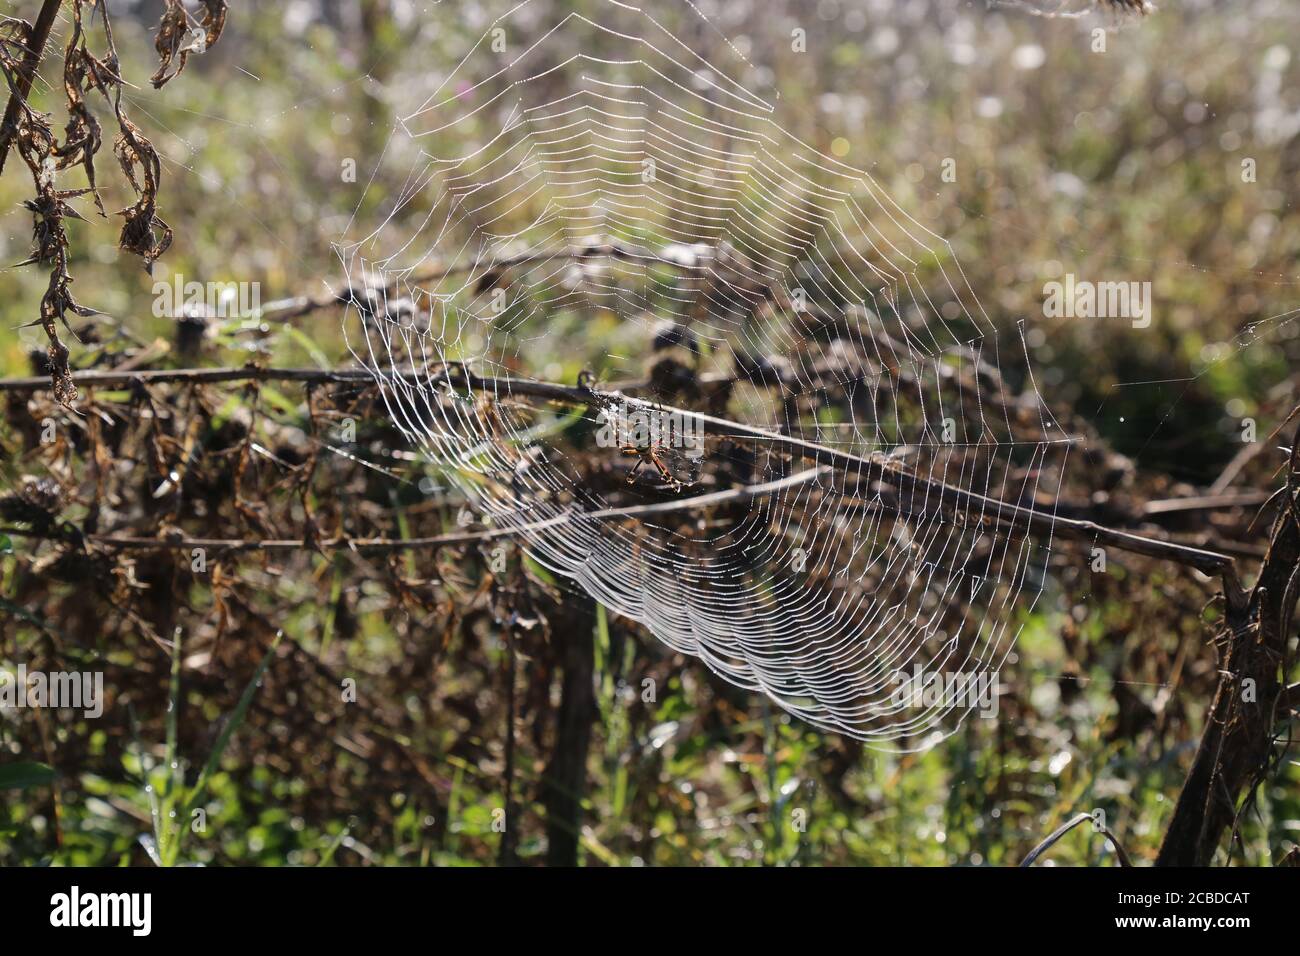 Gelb-schwarze Spinne in ihrem Spinnennetz - Argiope bruennichi Stockfoto